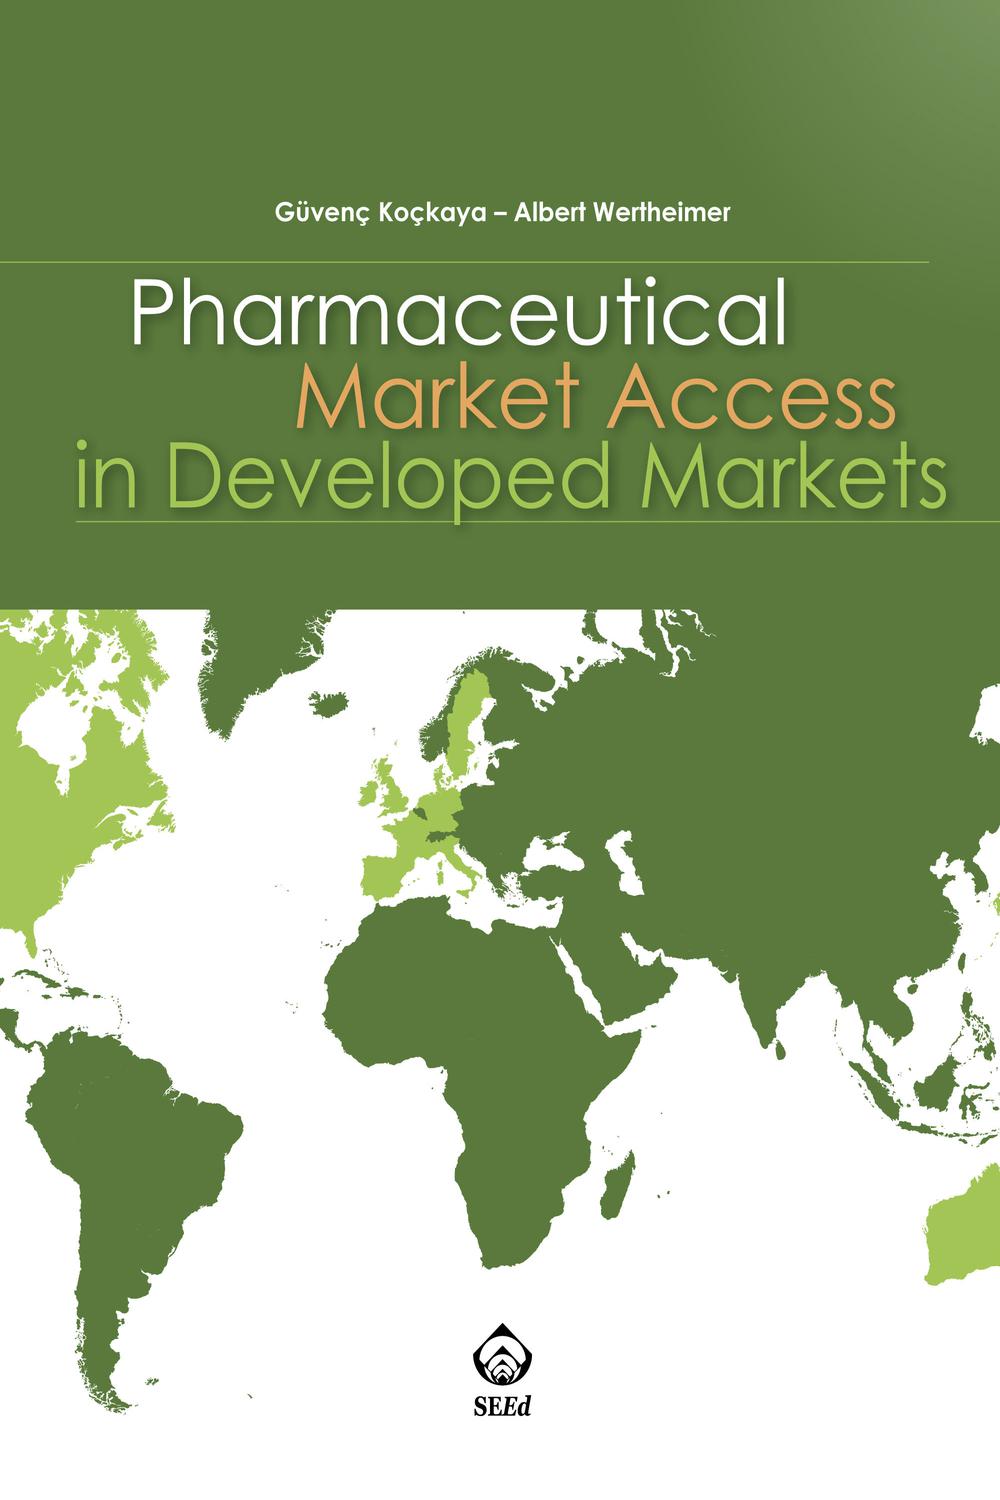 Pharmaceutical Market Access in Developed Markets - Güvenç Koçkaya, Albert Wertheimer